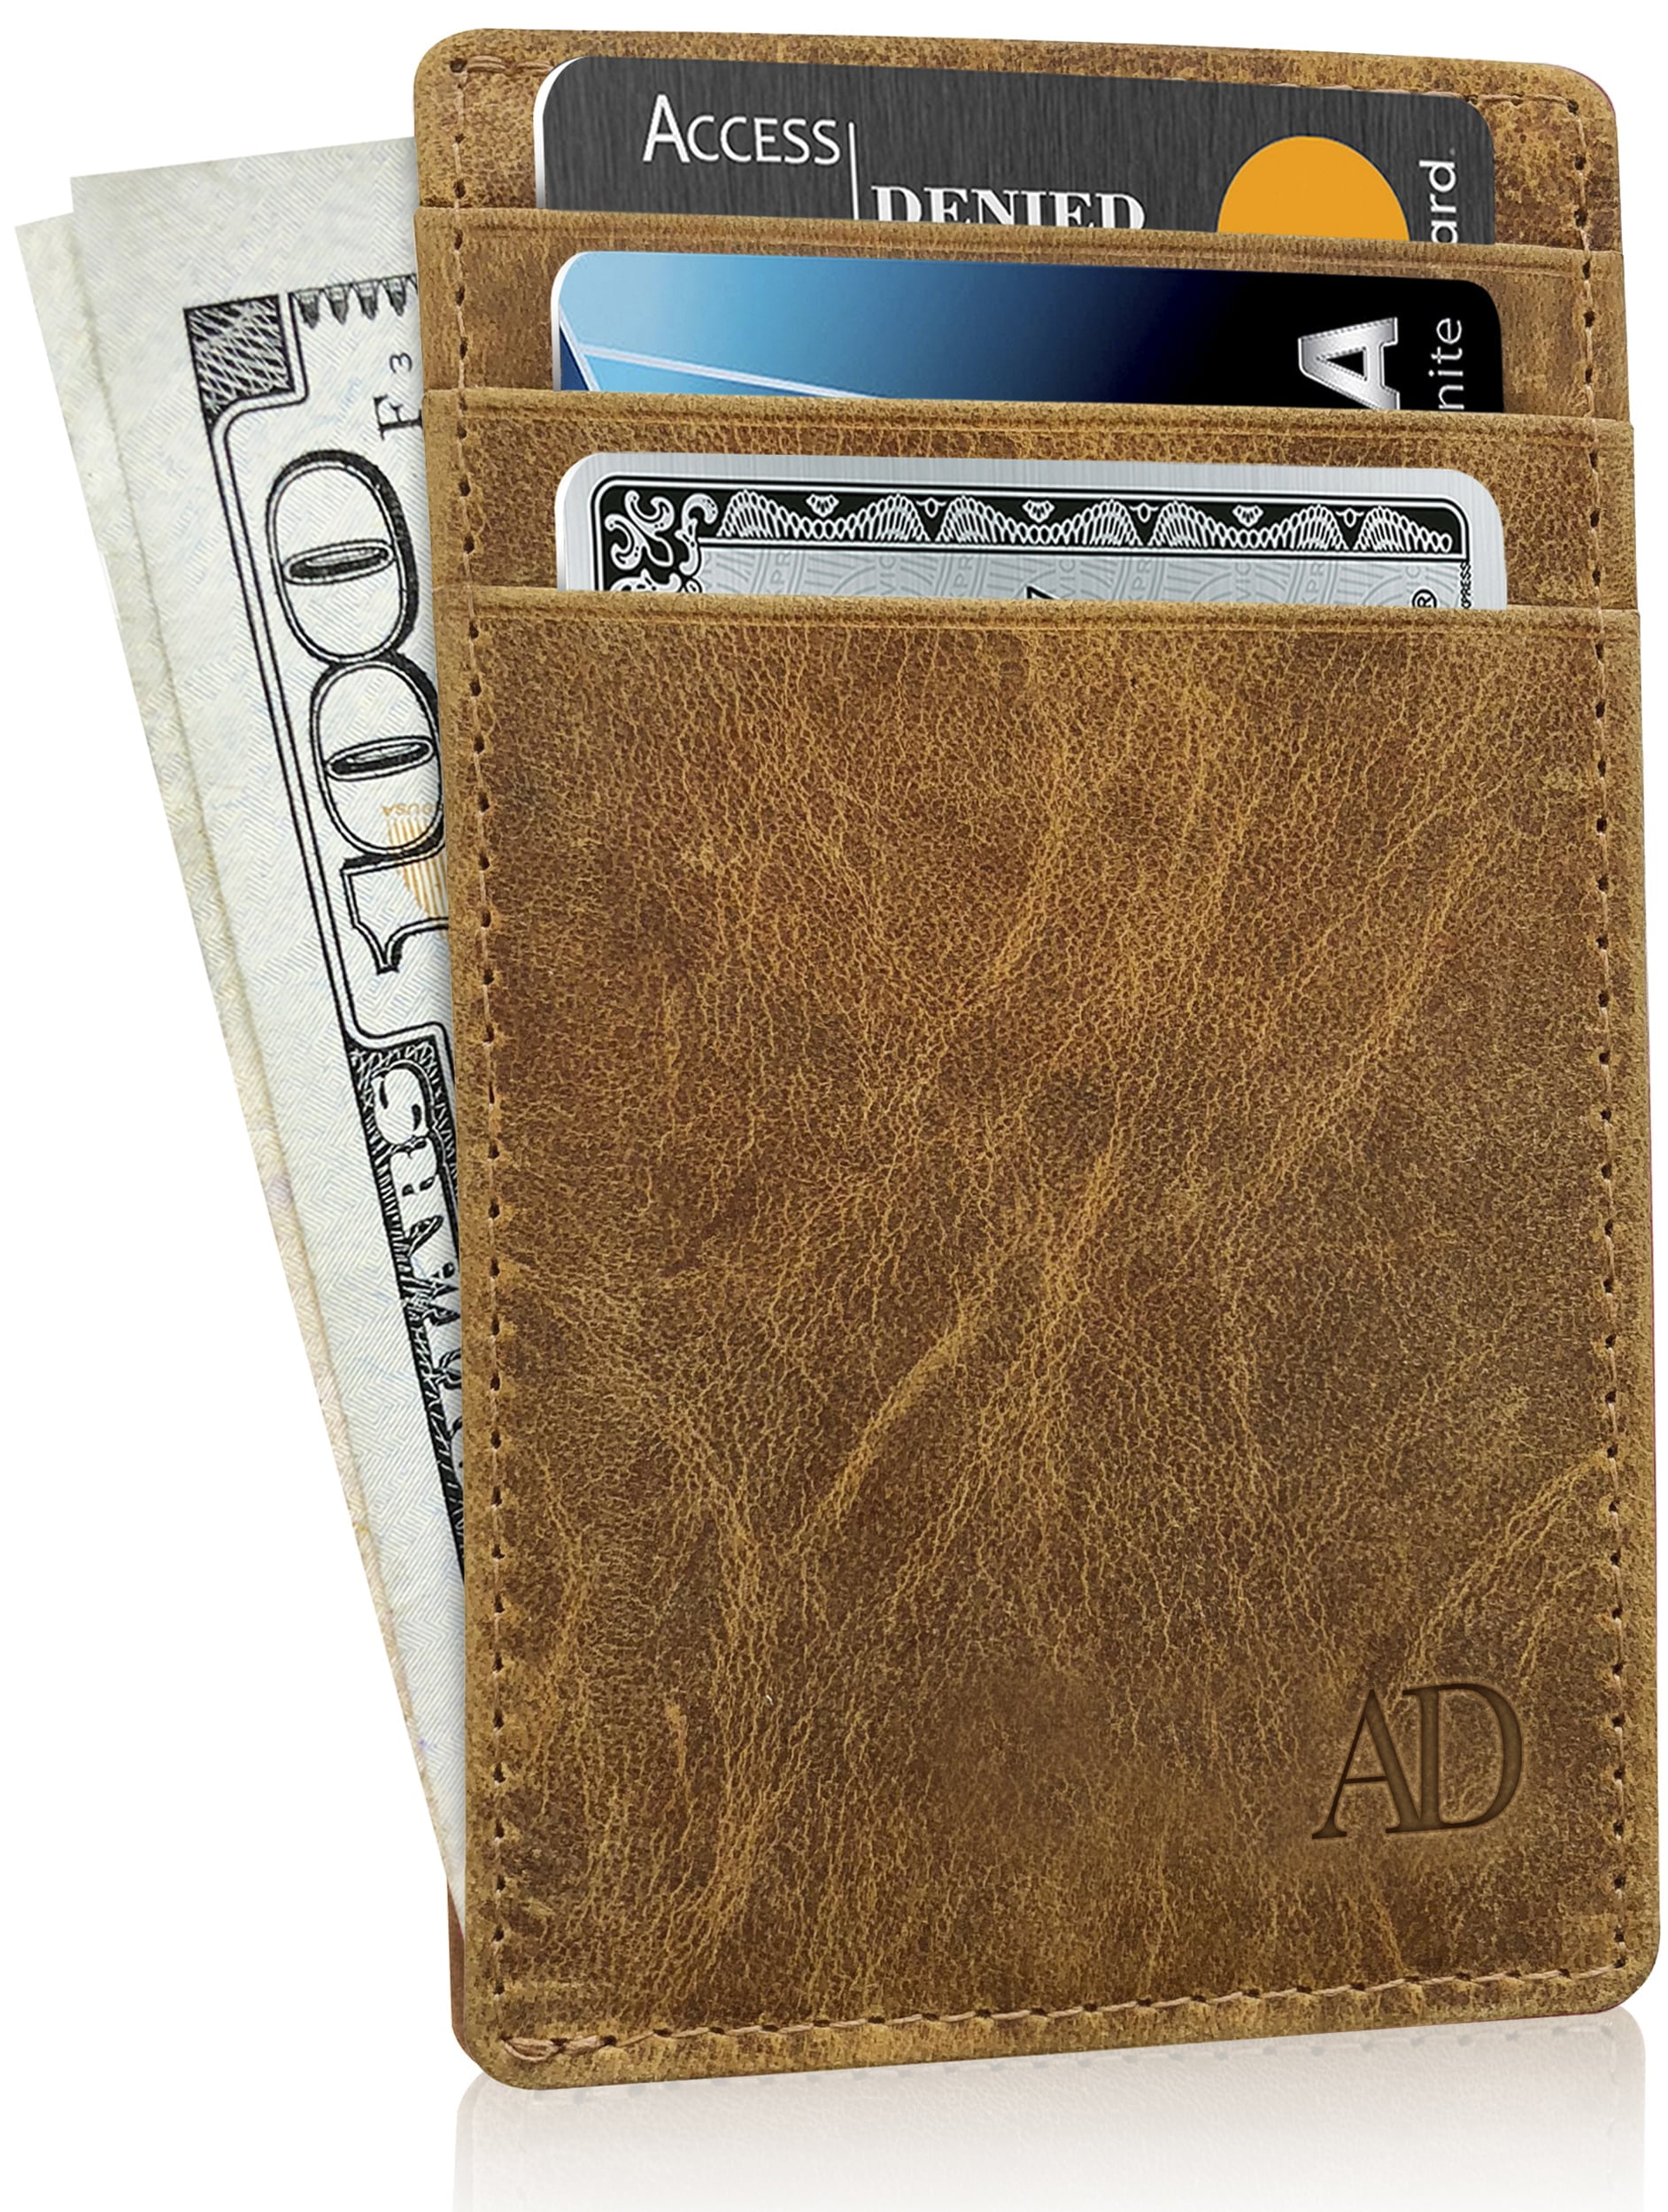 Pockt Slim Card Holder Wallet for Men and Women - Minimalist Front Pocket Wallet Elastic Credit Card Holder Genuine Leather RFID Blocking Card Case